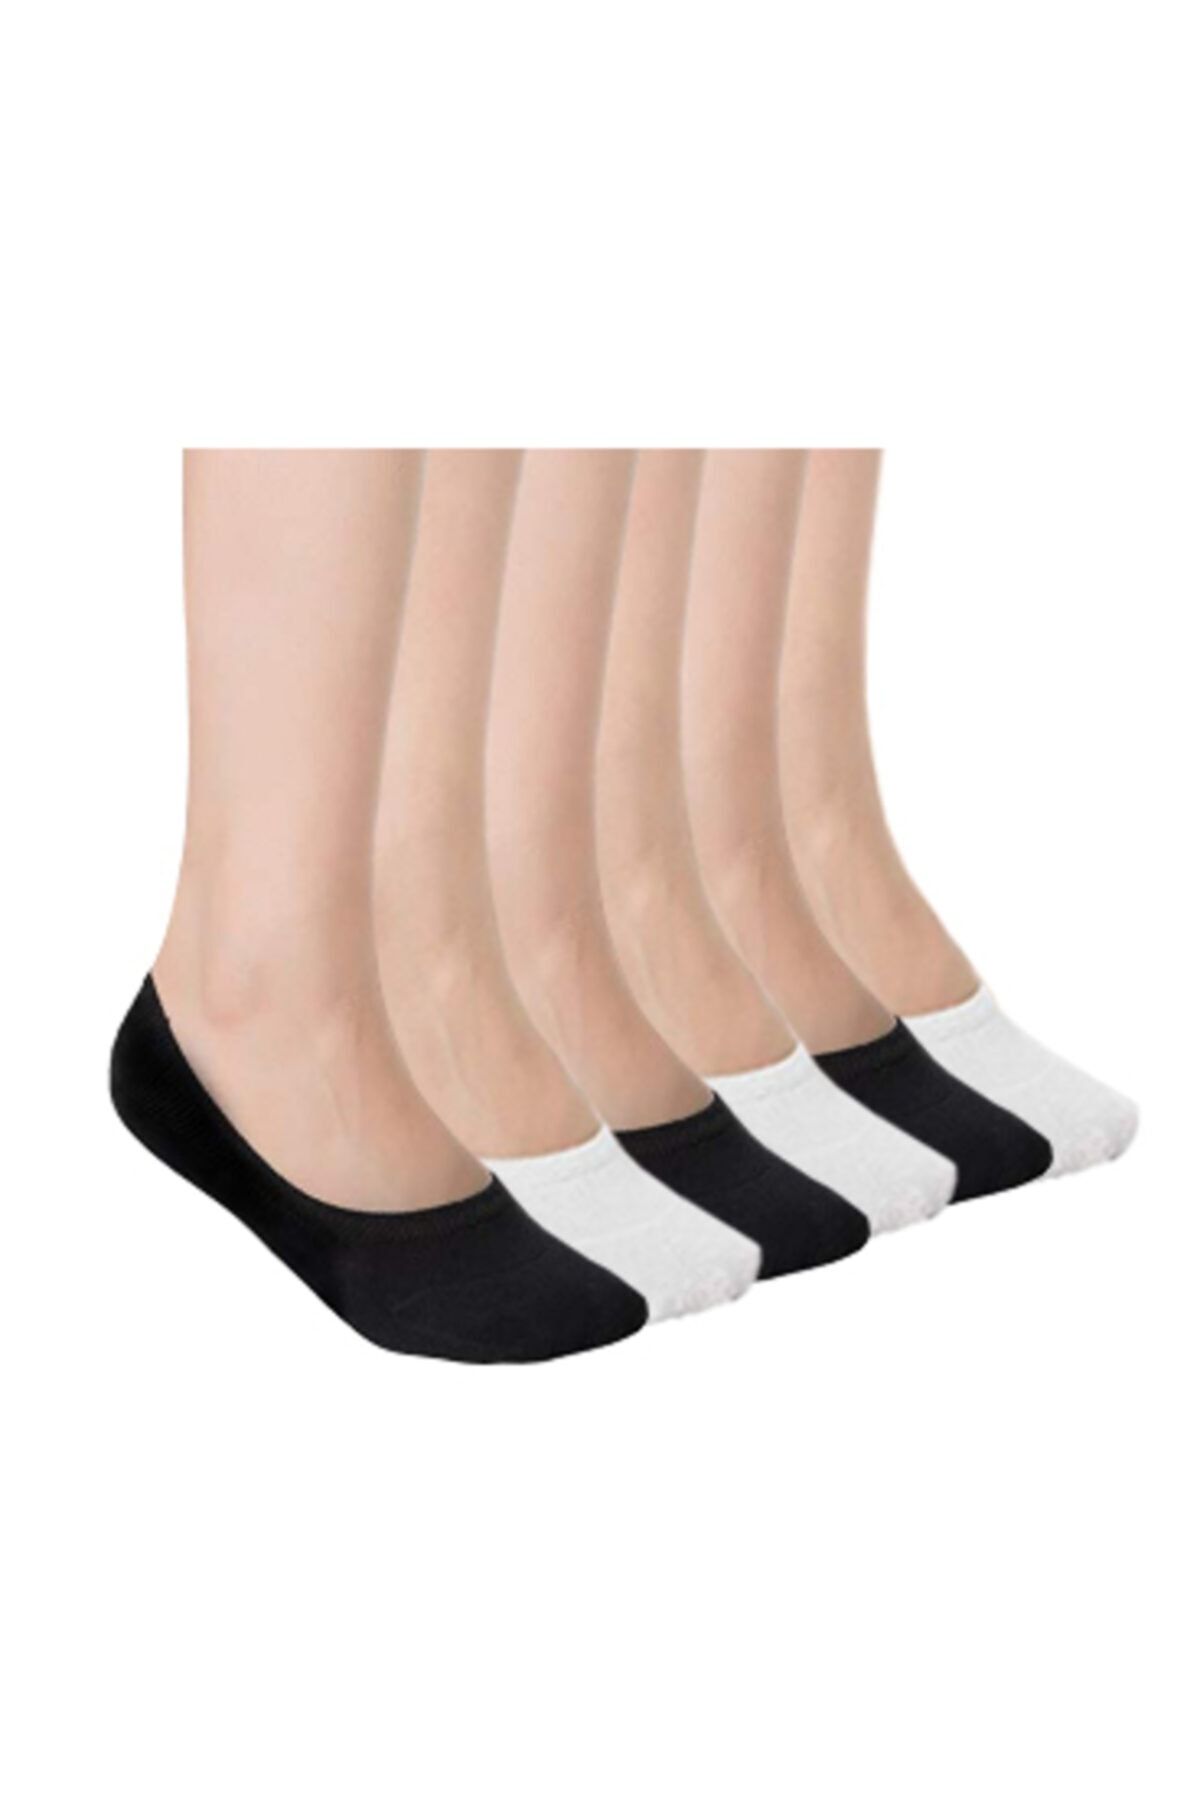 socksbox Bambu Dikişsiz Silikonlu Babet Çorabı | Siyah Ve Beyaz 8'li